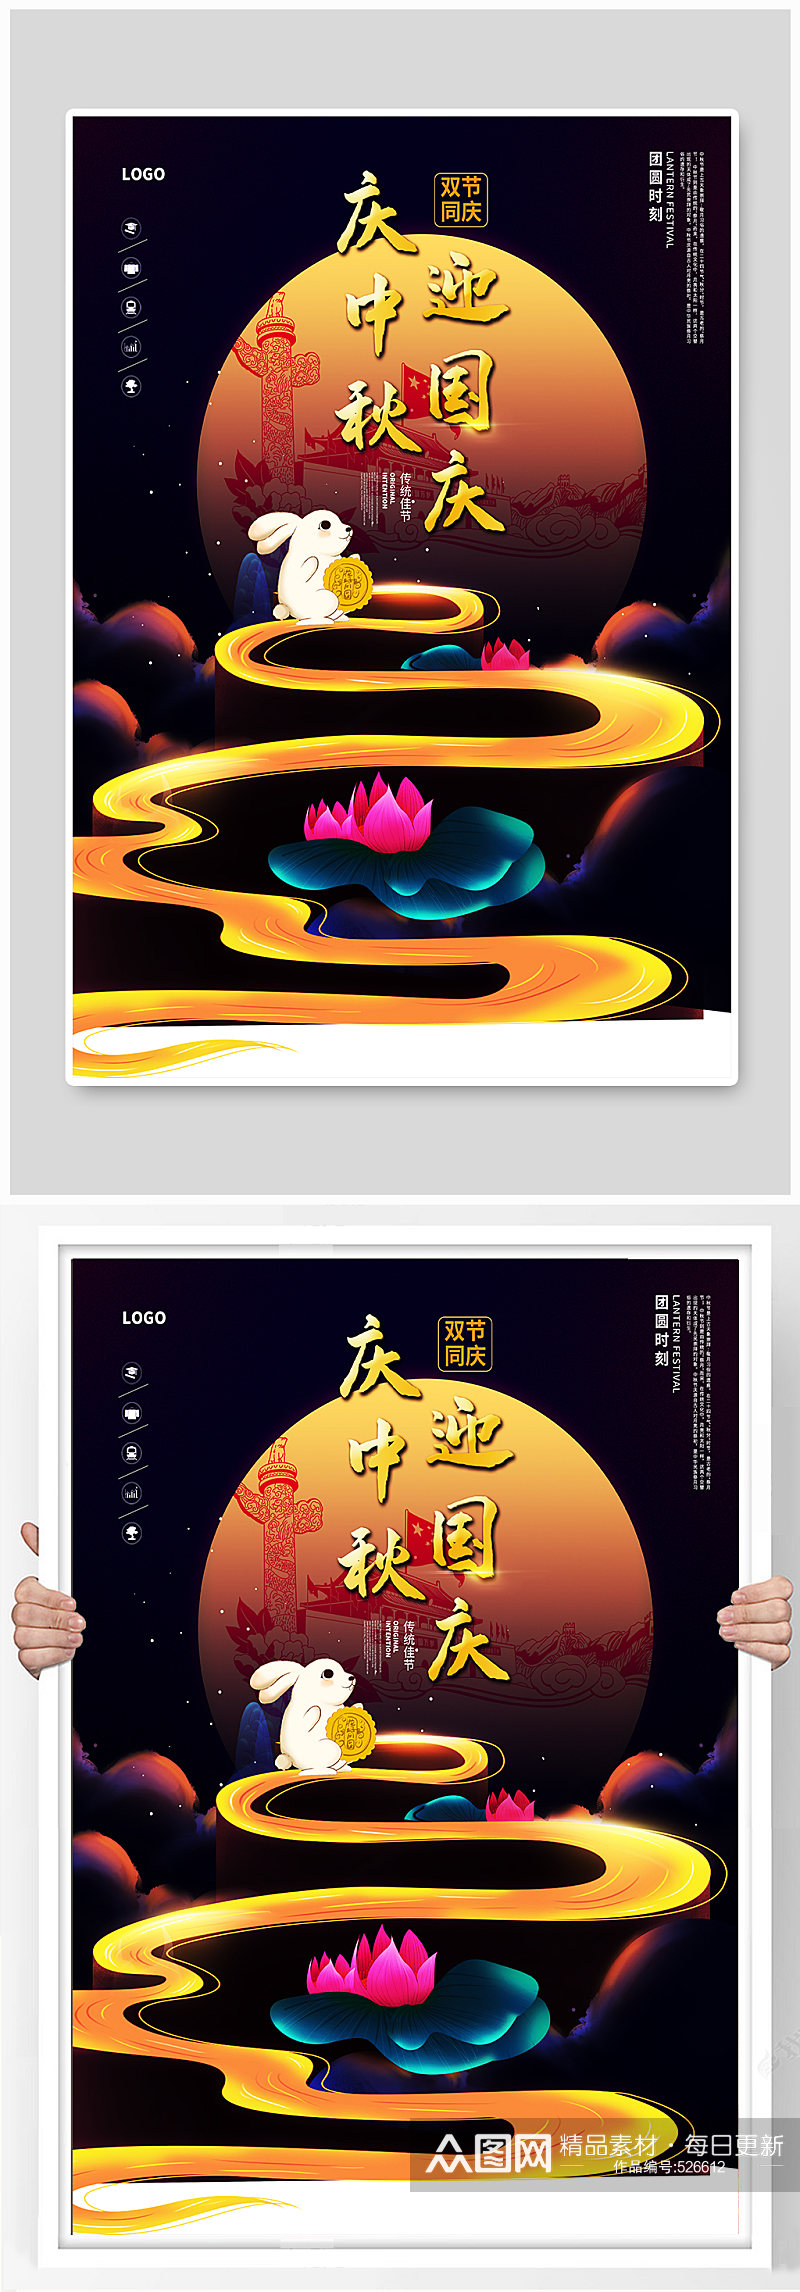 中秋国庆佳节宣传海报素材